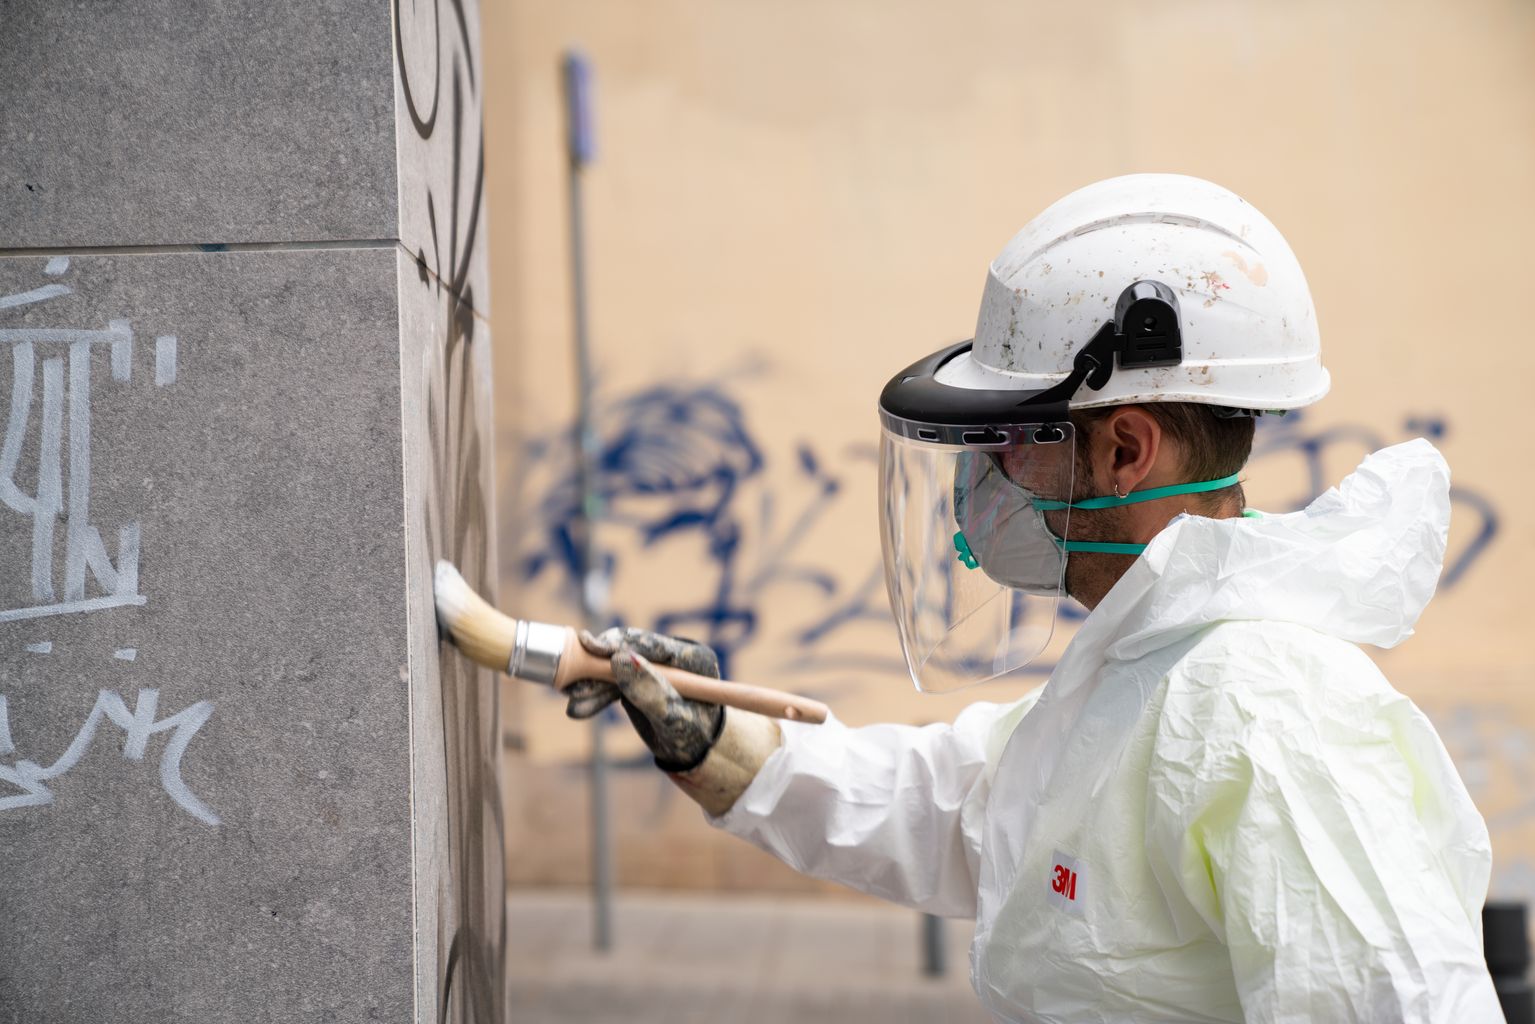 Un trabajador con el mono de protección y una mascarilla de seguridad aplica un producto sobre unos grafitis pintados en una pared para retirarlos